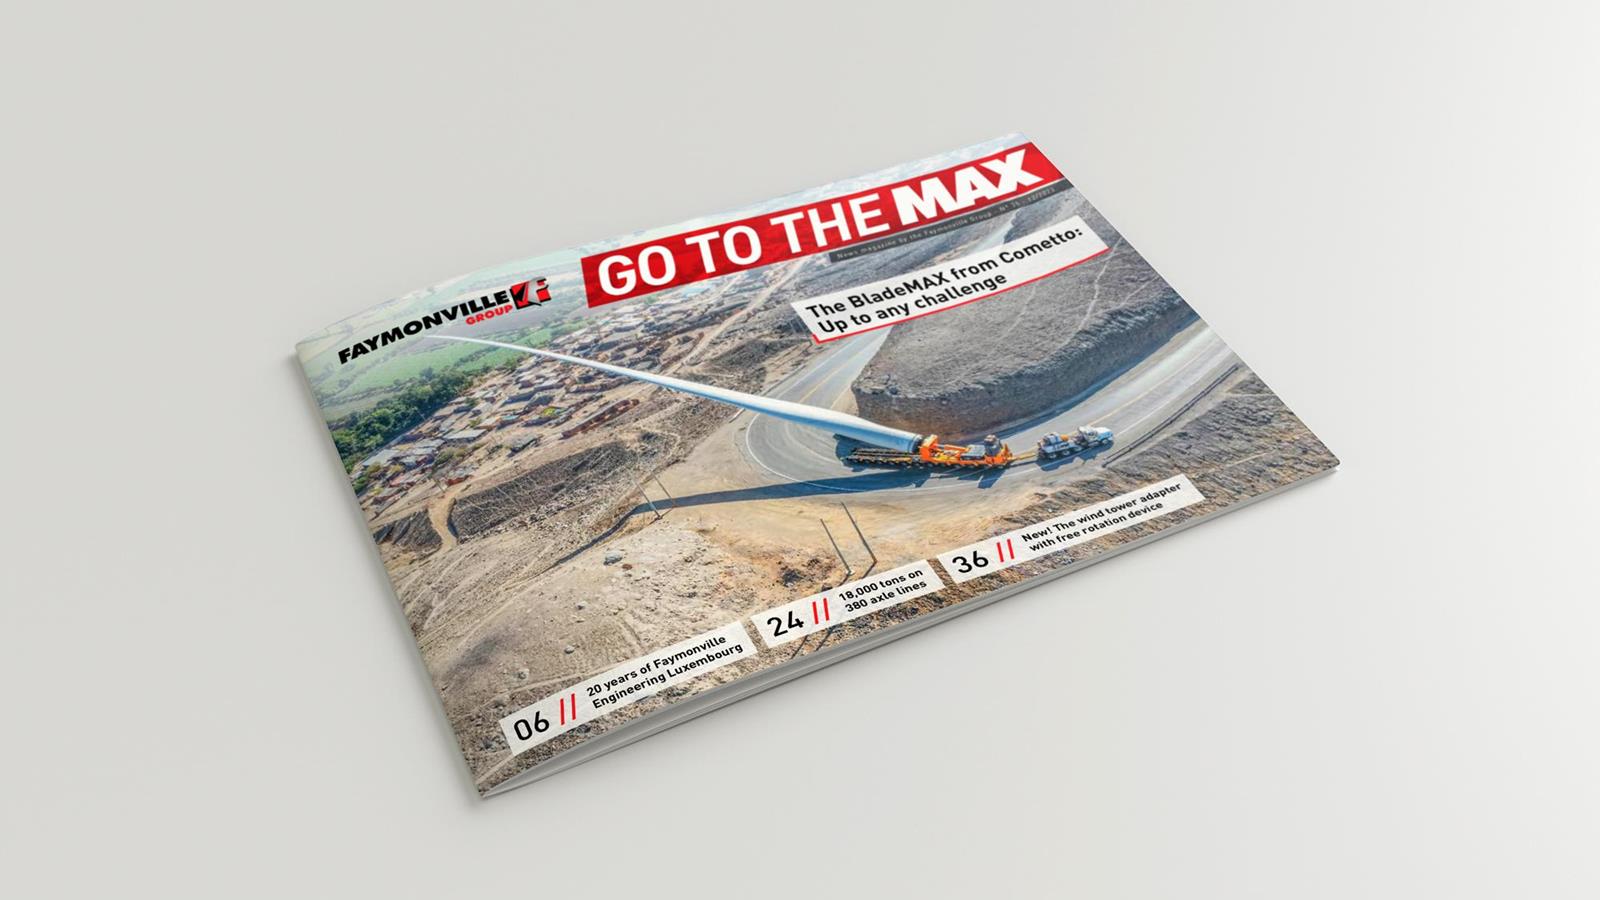 Ontdek de nieuwe "Go to the MAX"